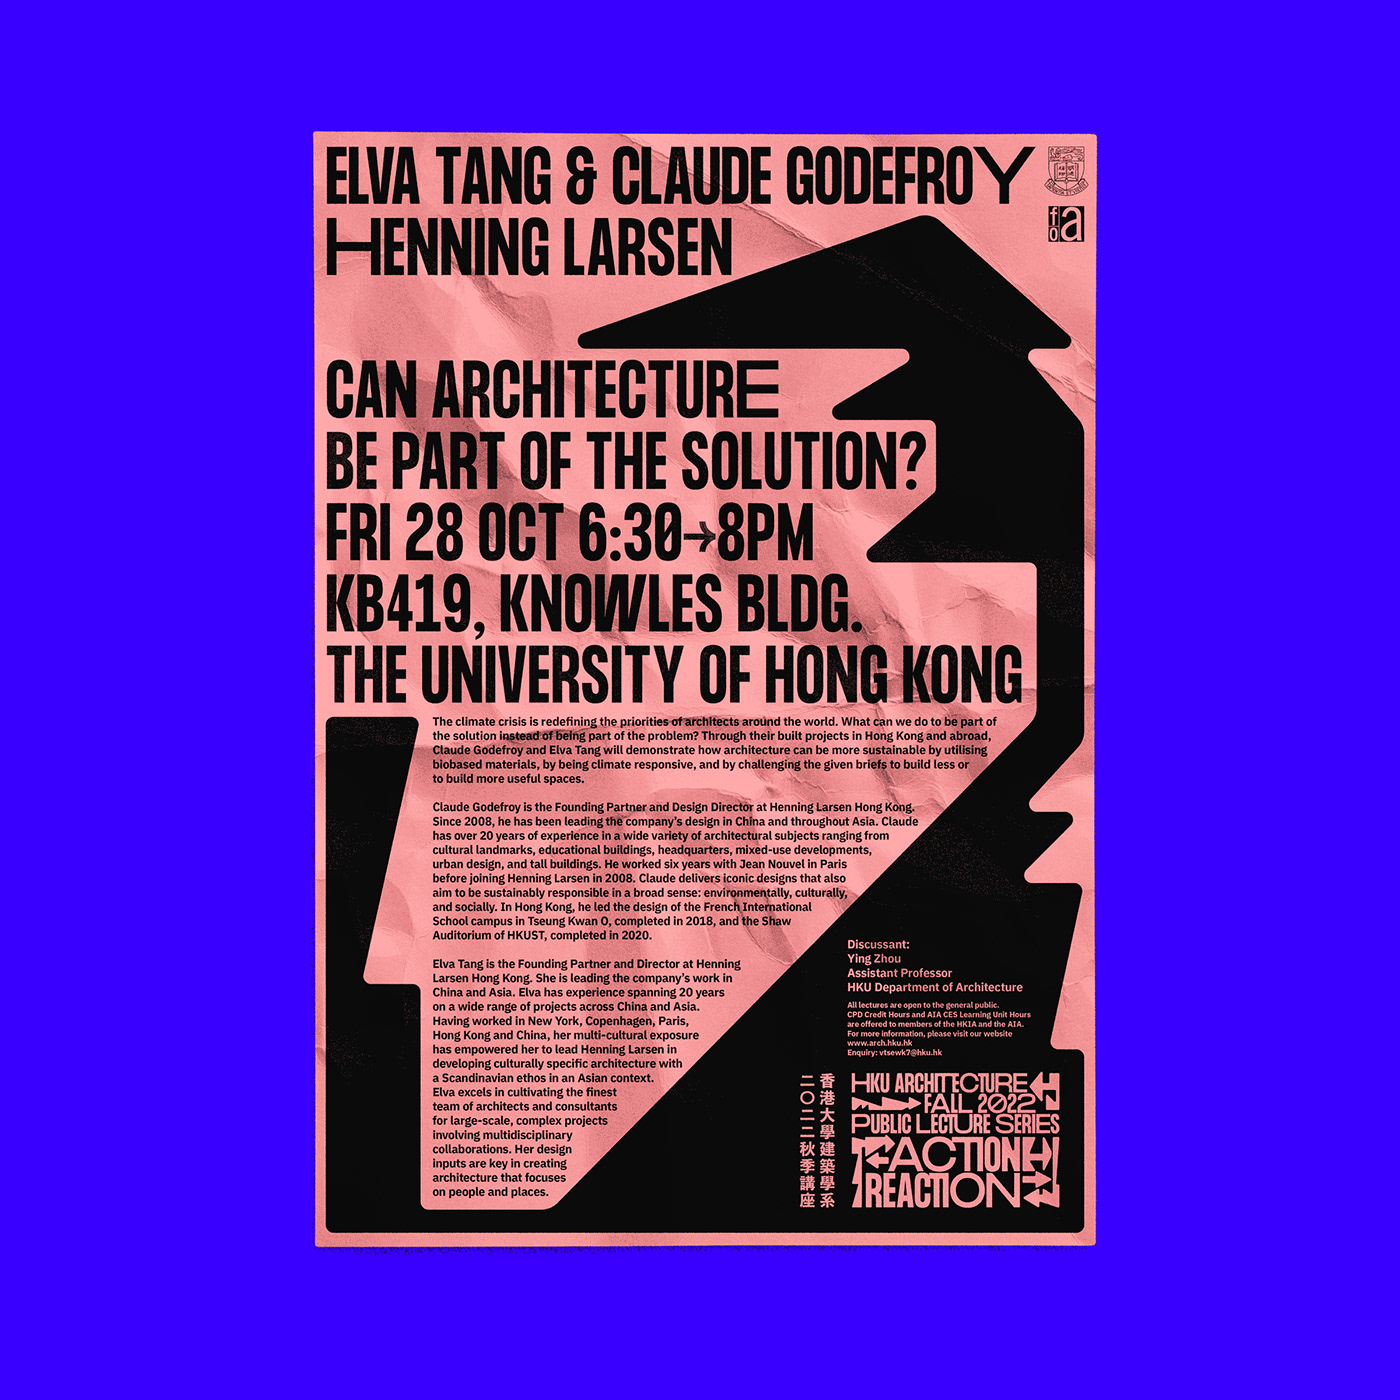 Architecture Poster architecture school hku hkuarchitecture Hong Kong Lecture Series Lecture Series Poster poster Poster Design visual identity